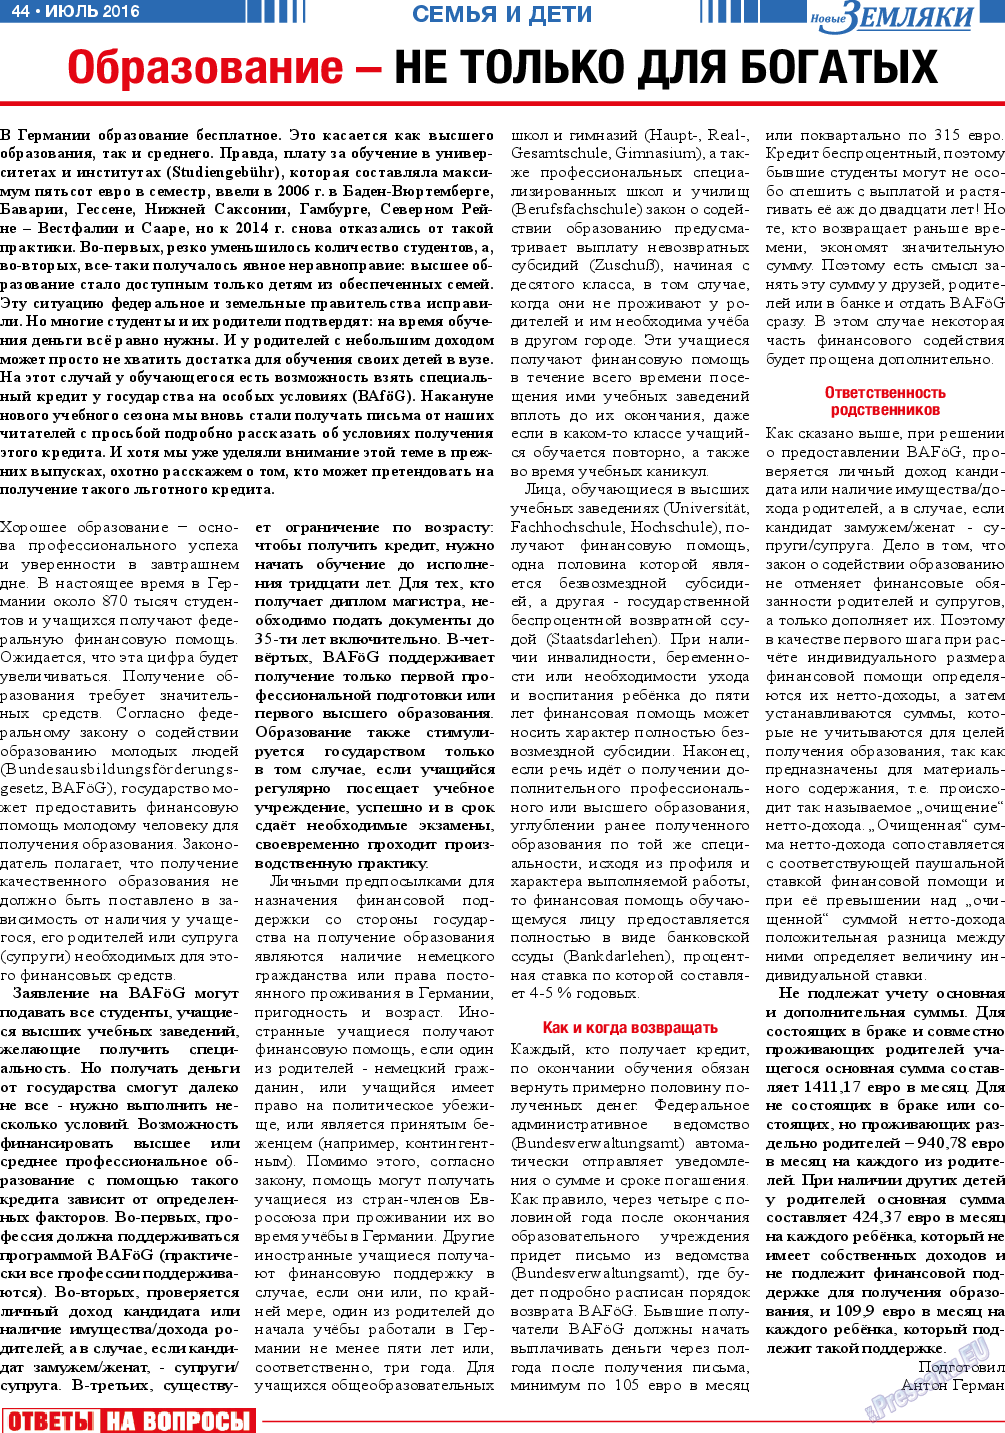 Новые Земляки, газета. 2016 №7 стр.44